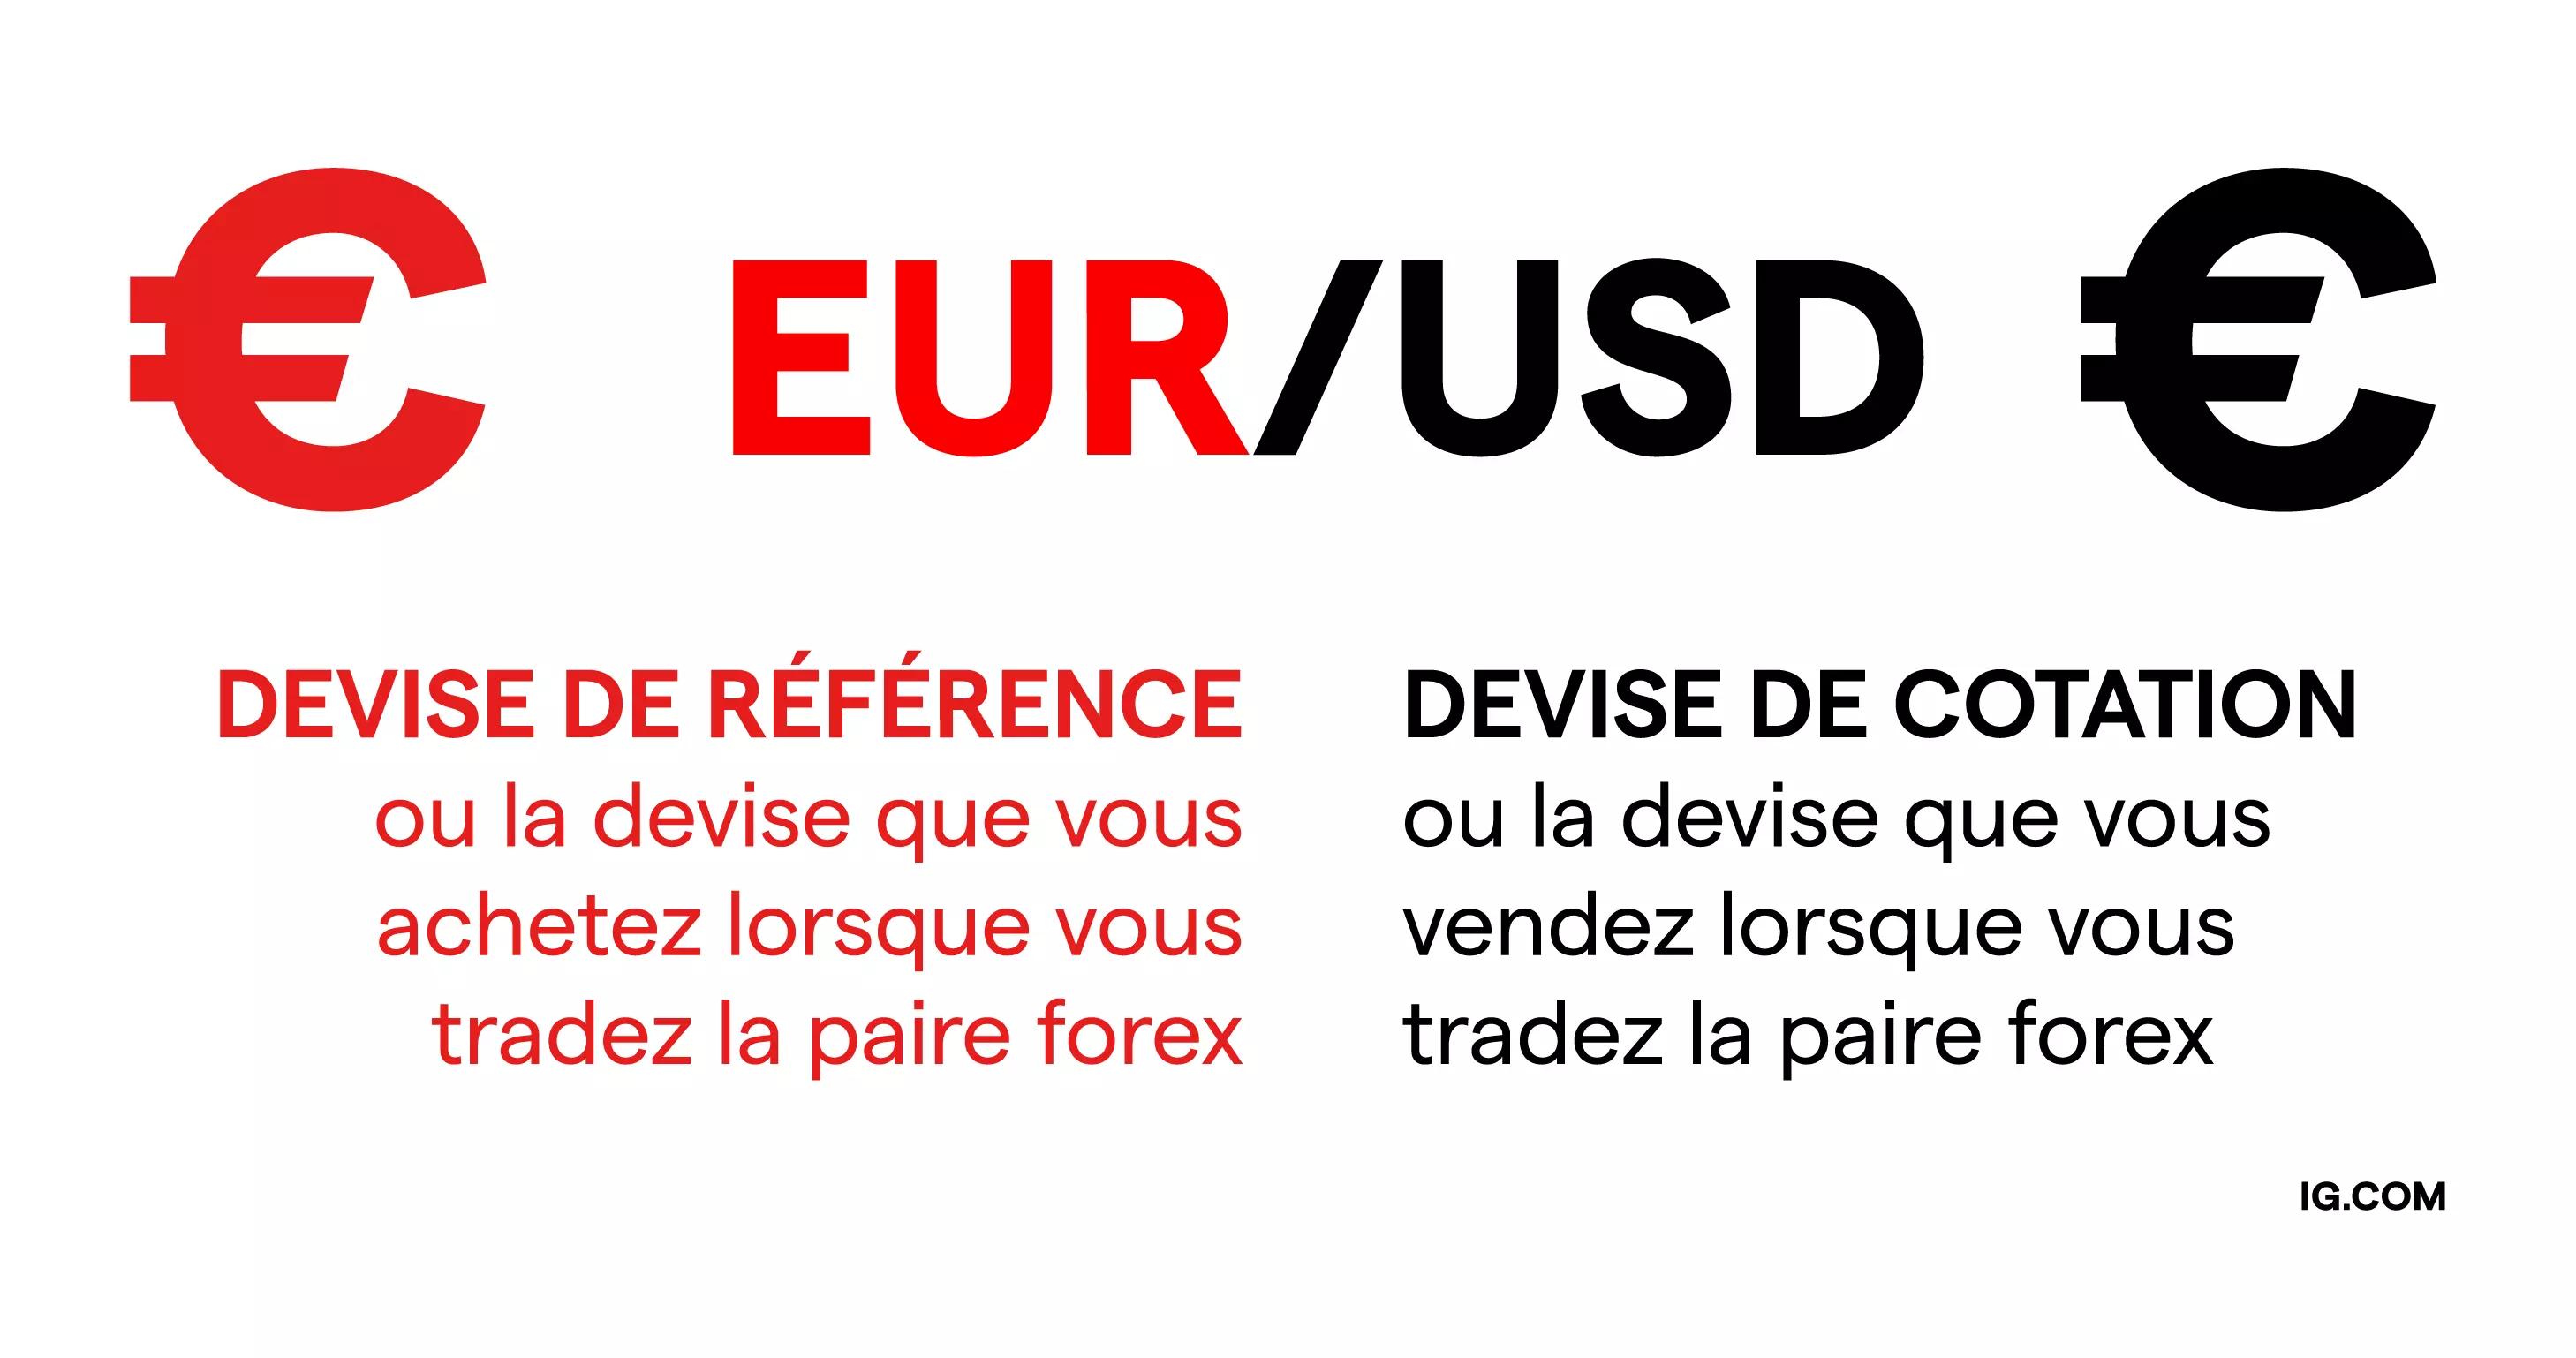 Un symbole euro côté gauche indiquant la devise de base et un symbole dollar côté droit indiquant la devise de cotation.